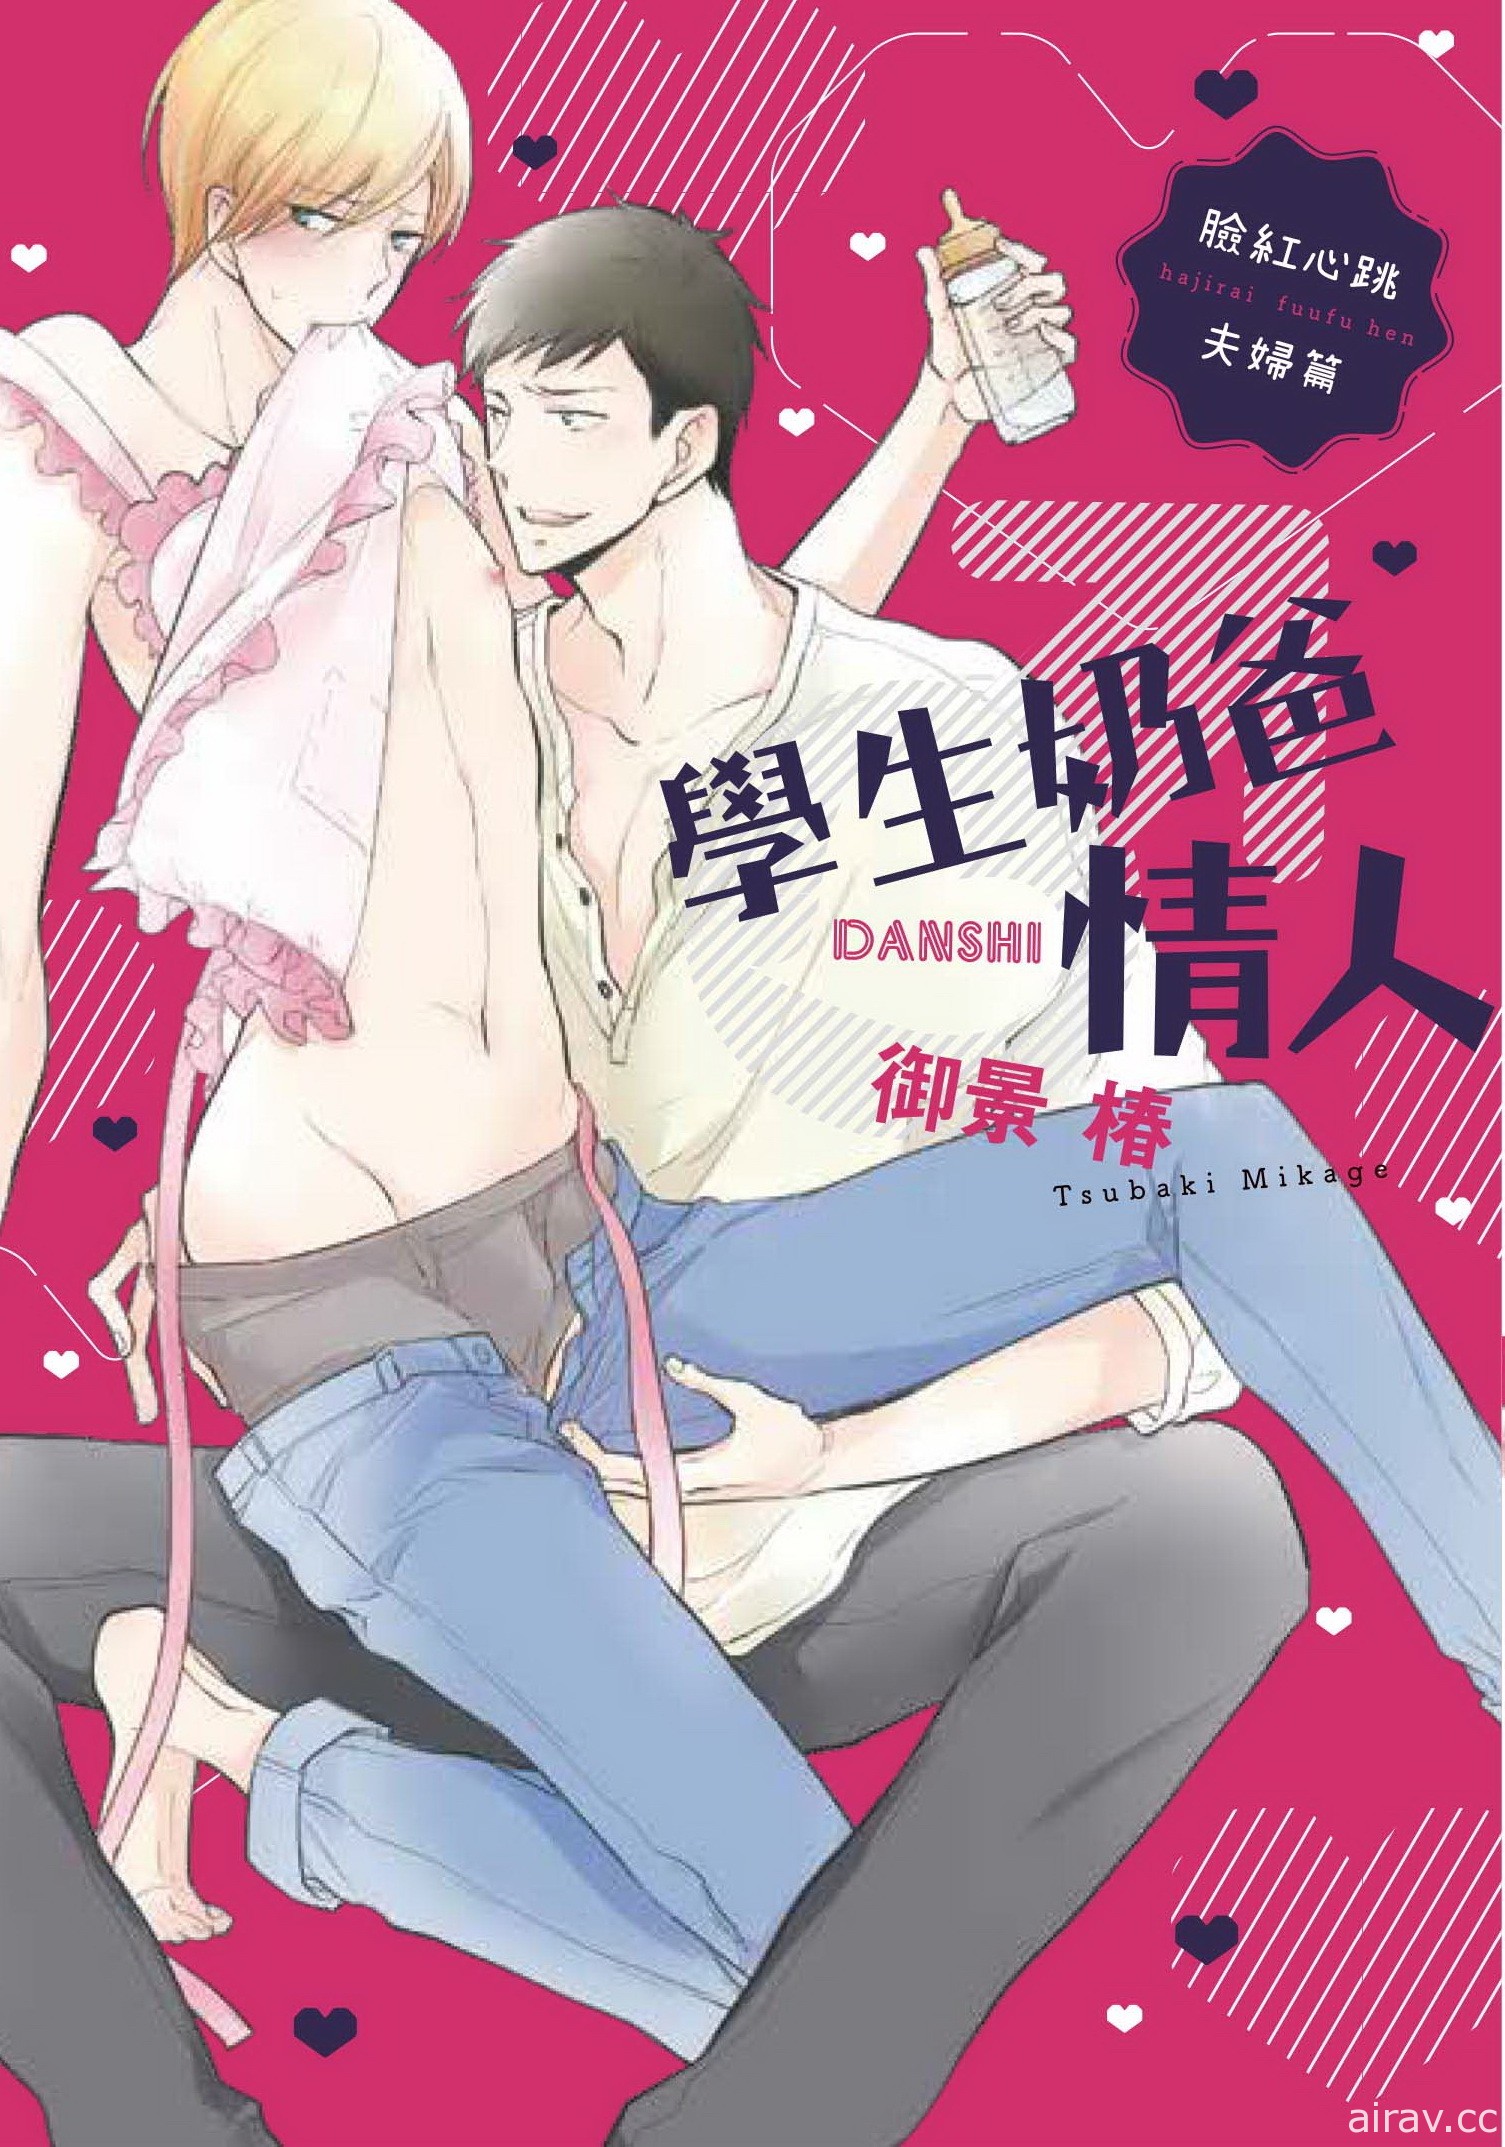 【书讯】台湾东贩 4 月漫画新书《昨日，你已长眠。》等作